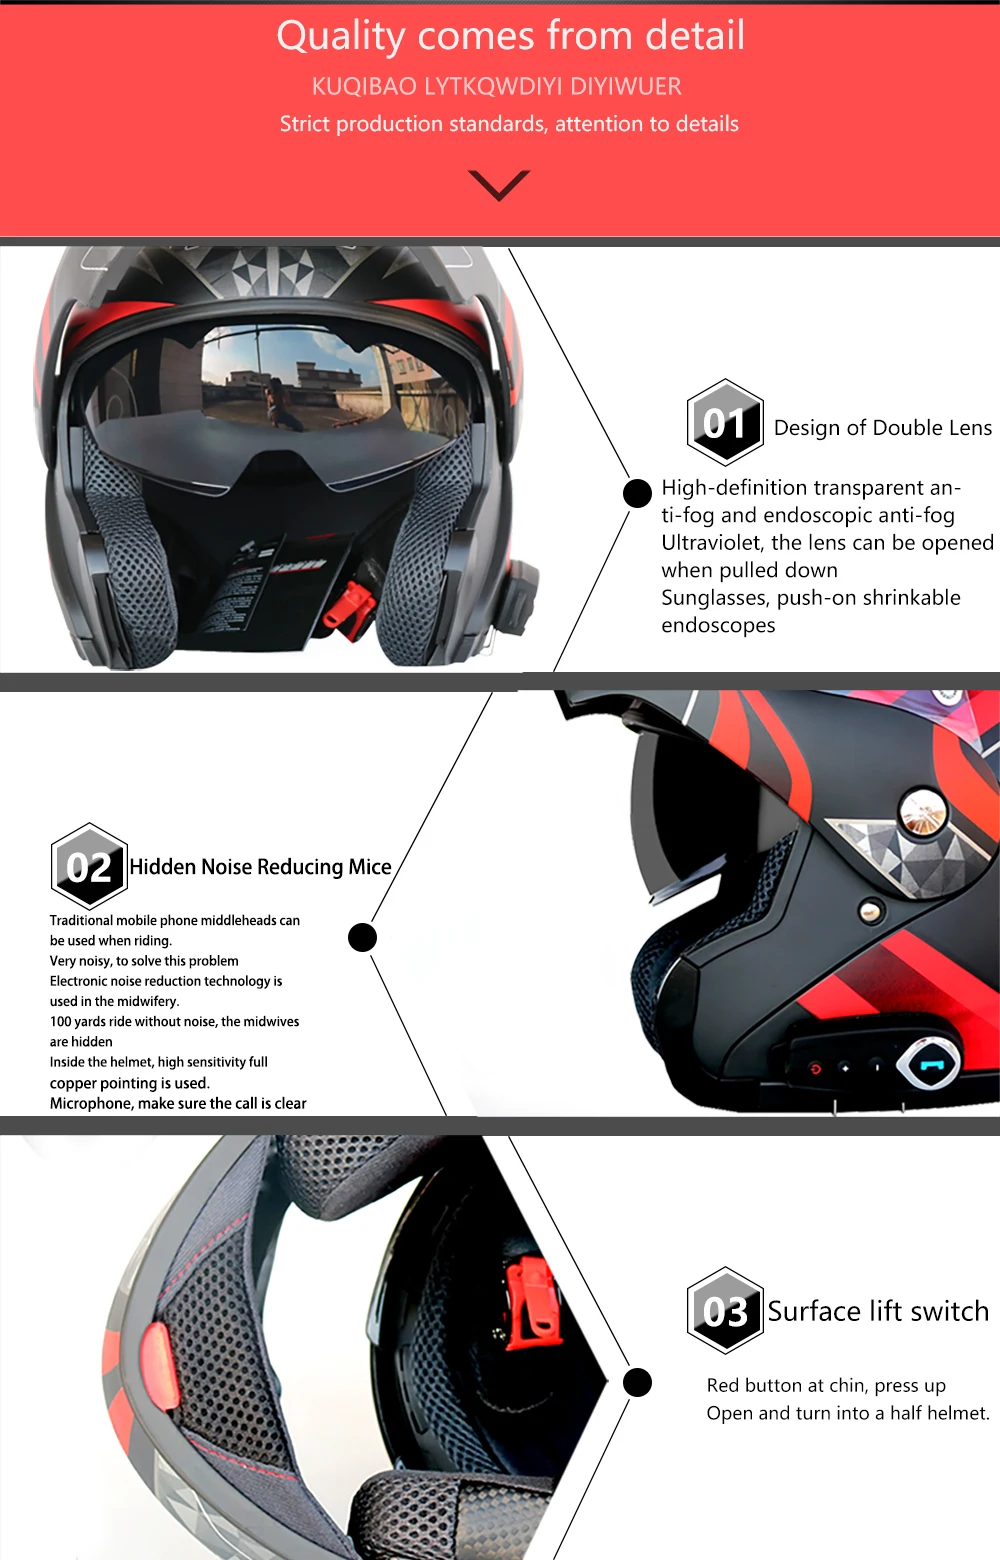 Для мужчин и женщин мотоциклетный шлем Bluetooth шлем шоссейные гонки Unveiled шлем Высокое качество звука с радио в режиме ожидания 48 часов